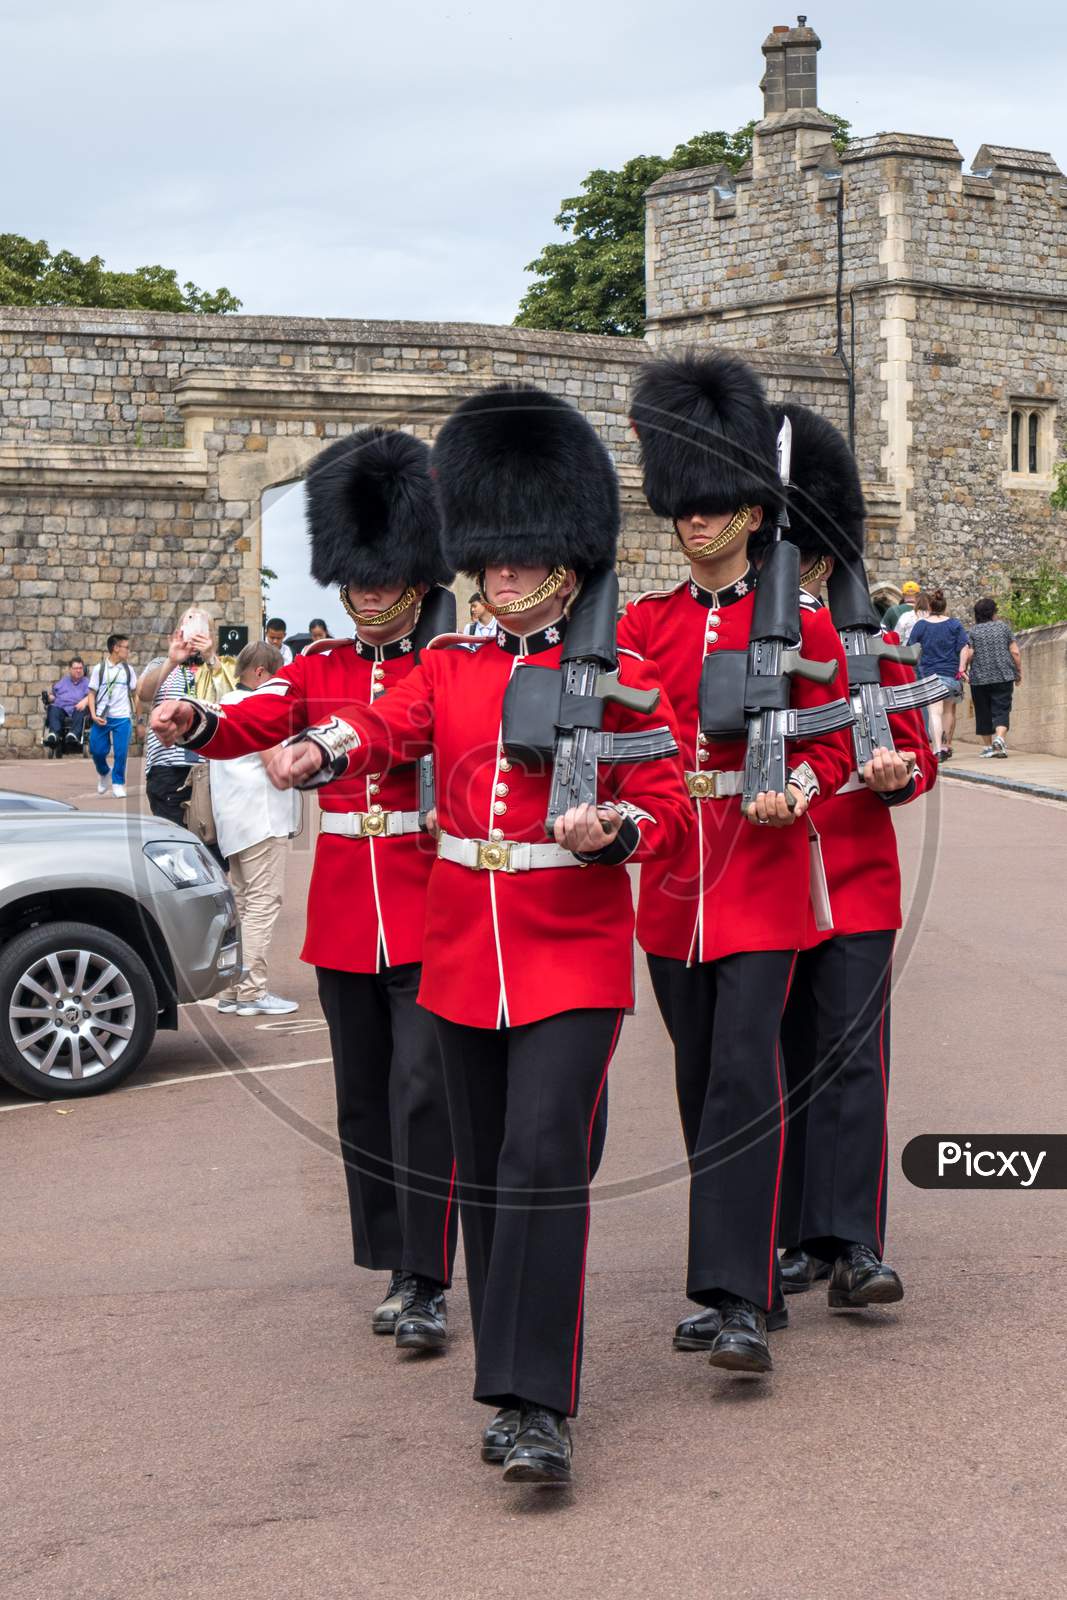 Windsor, Maidenhead & Windsor/Uk - July 22 : Coldstream Guards On Duty At Windsor Castle In Windsor, Maidenhead & Windsor On July 22, 2018. Unidentified People